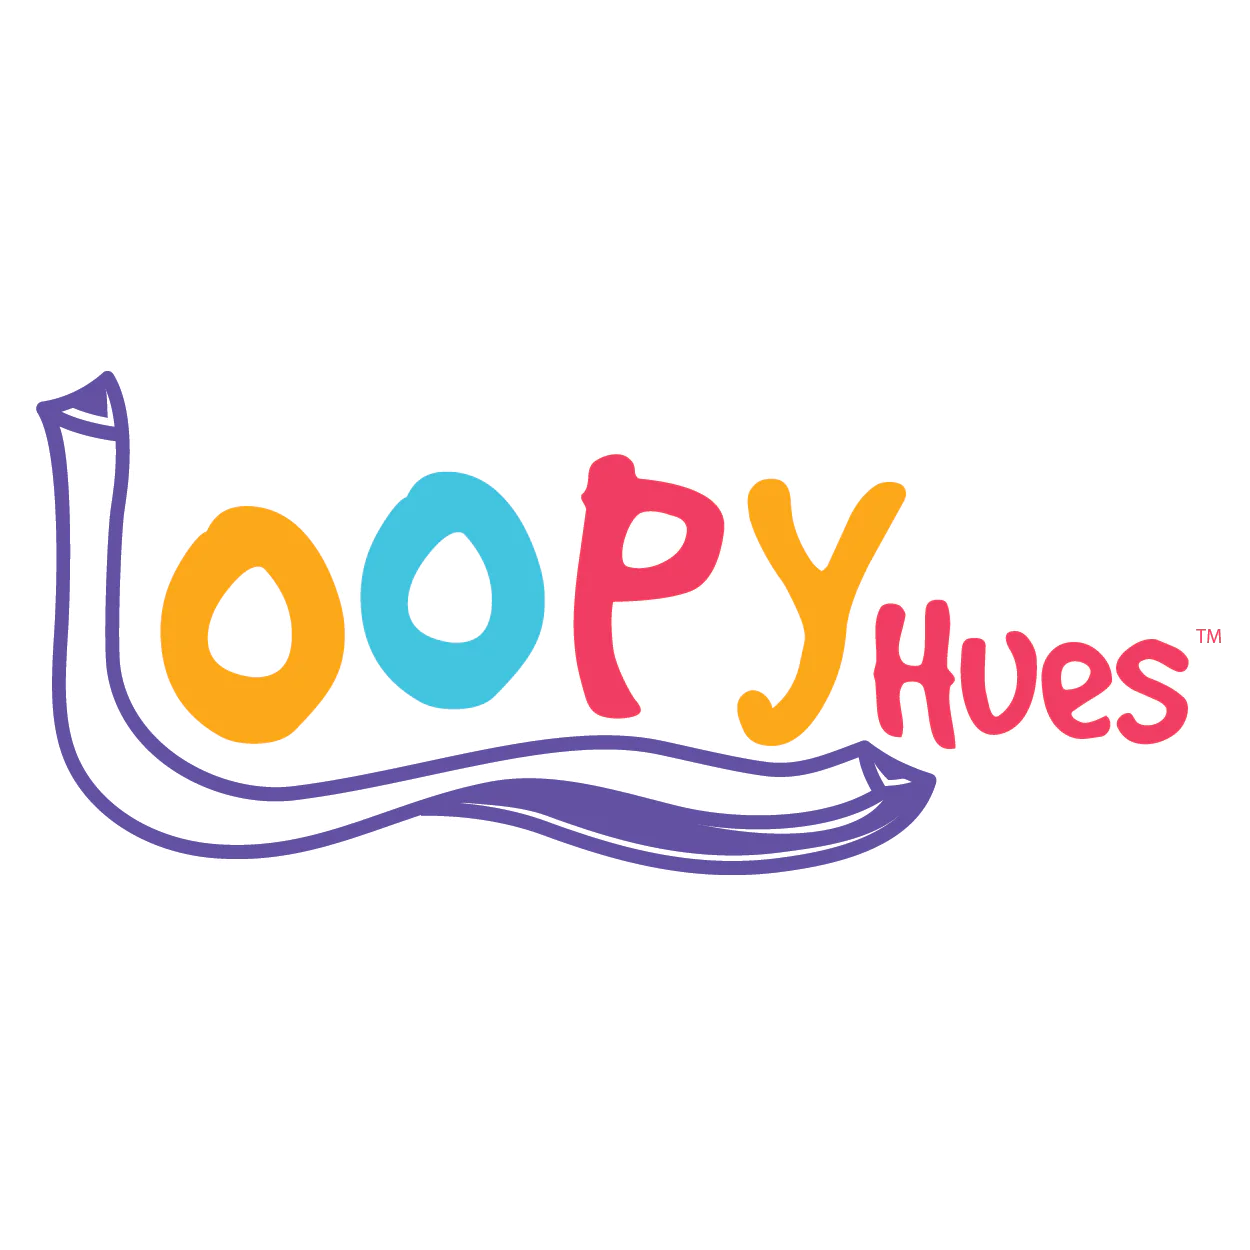 Loopy Hues